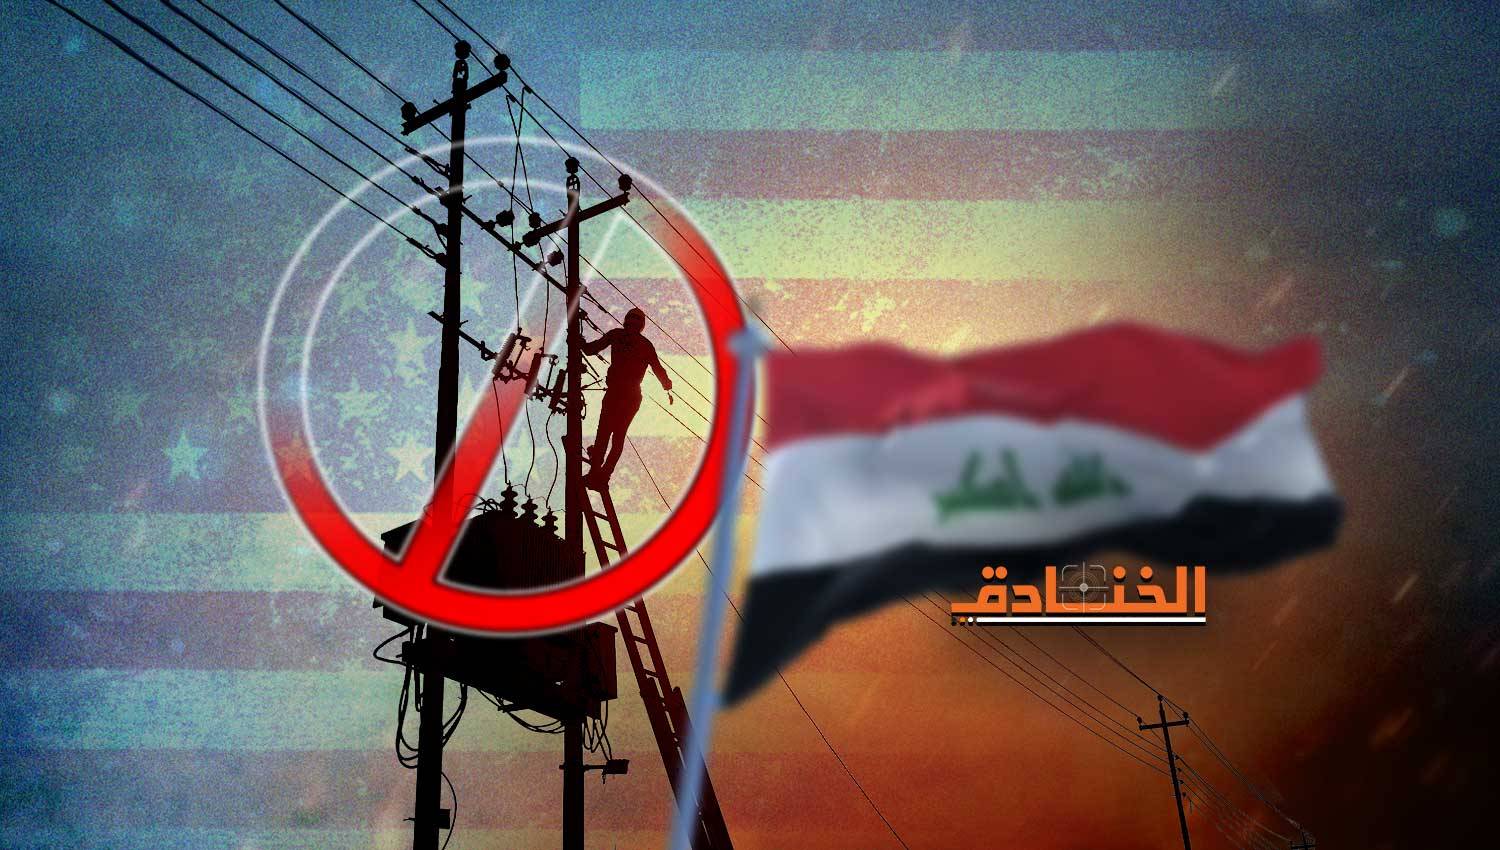 بلينكن يؤكّد مسؤولية بلاده عن أزمة العراق الكهربائية